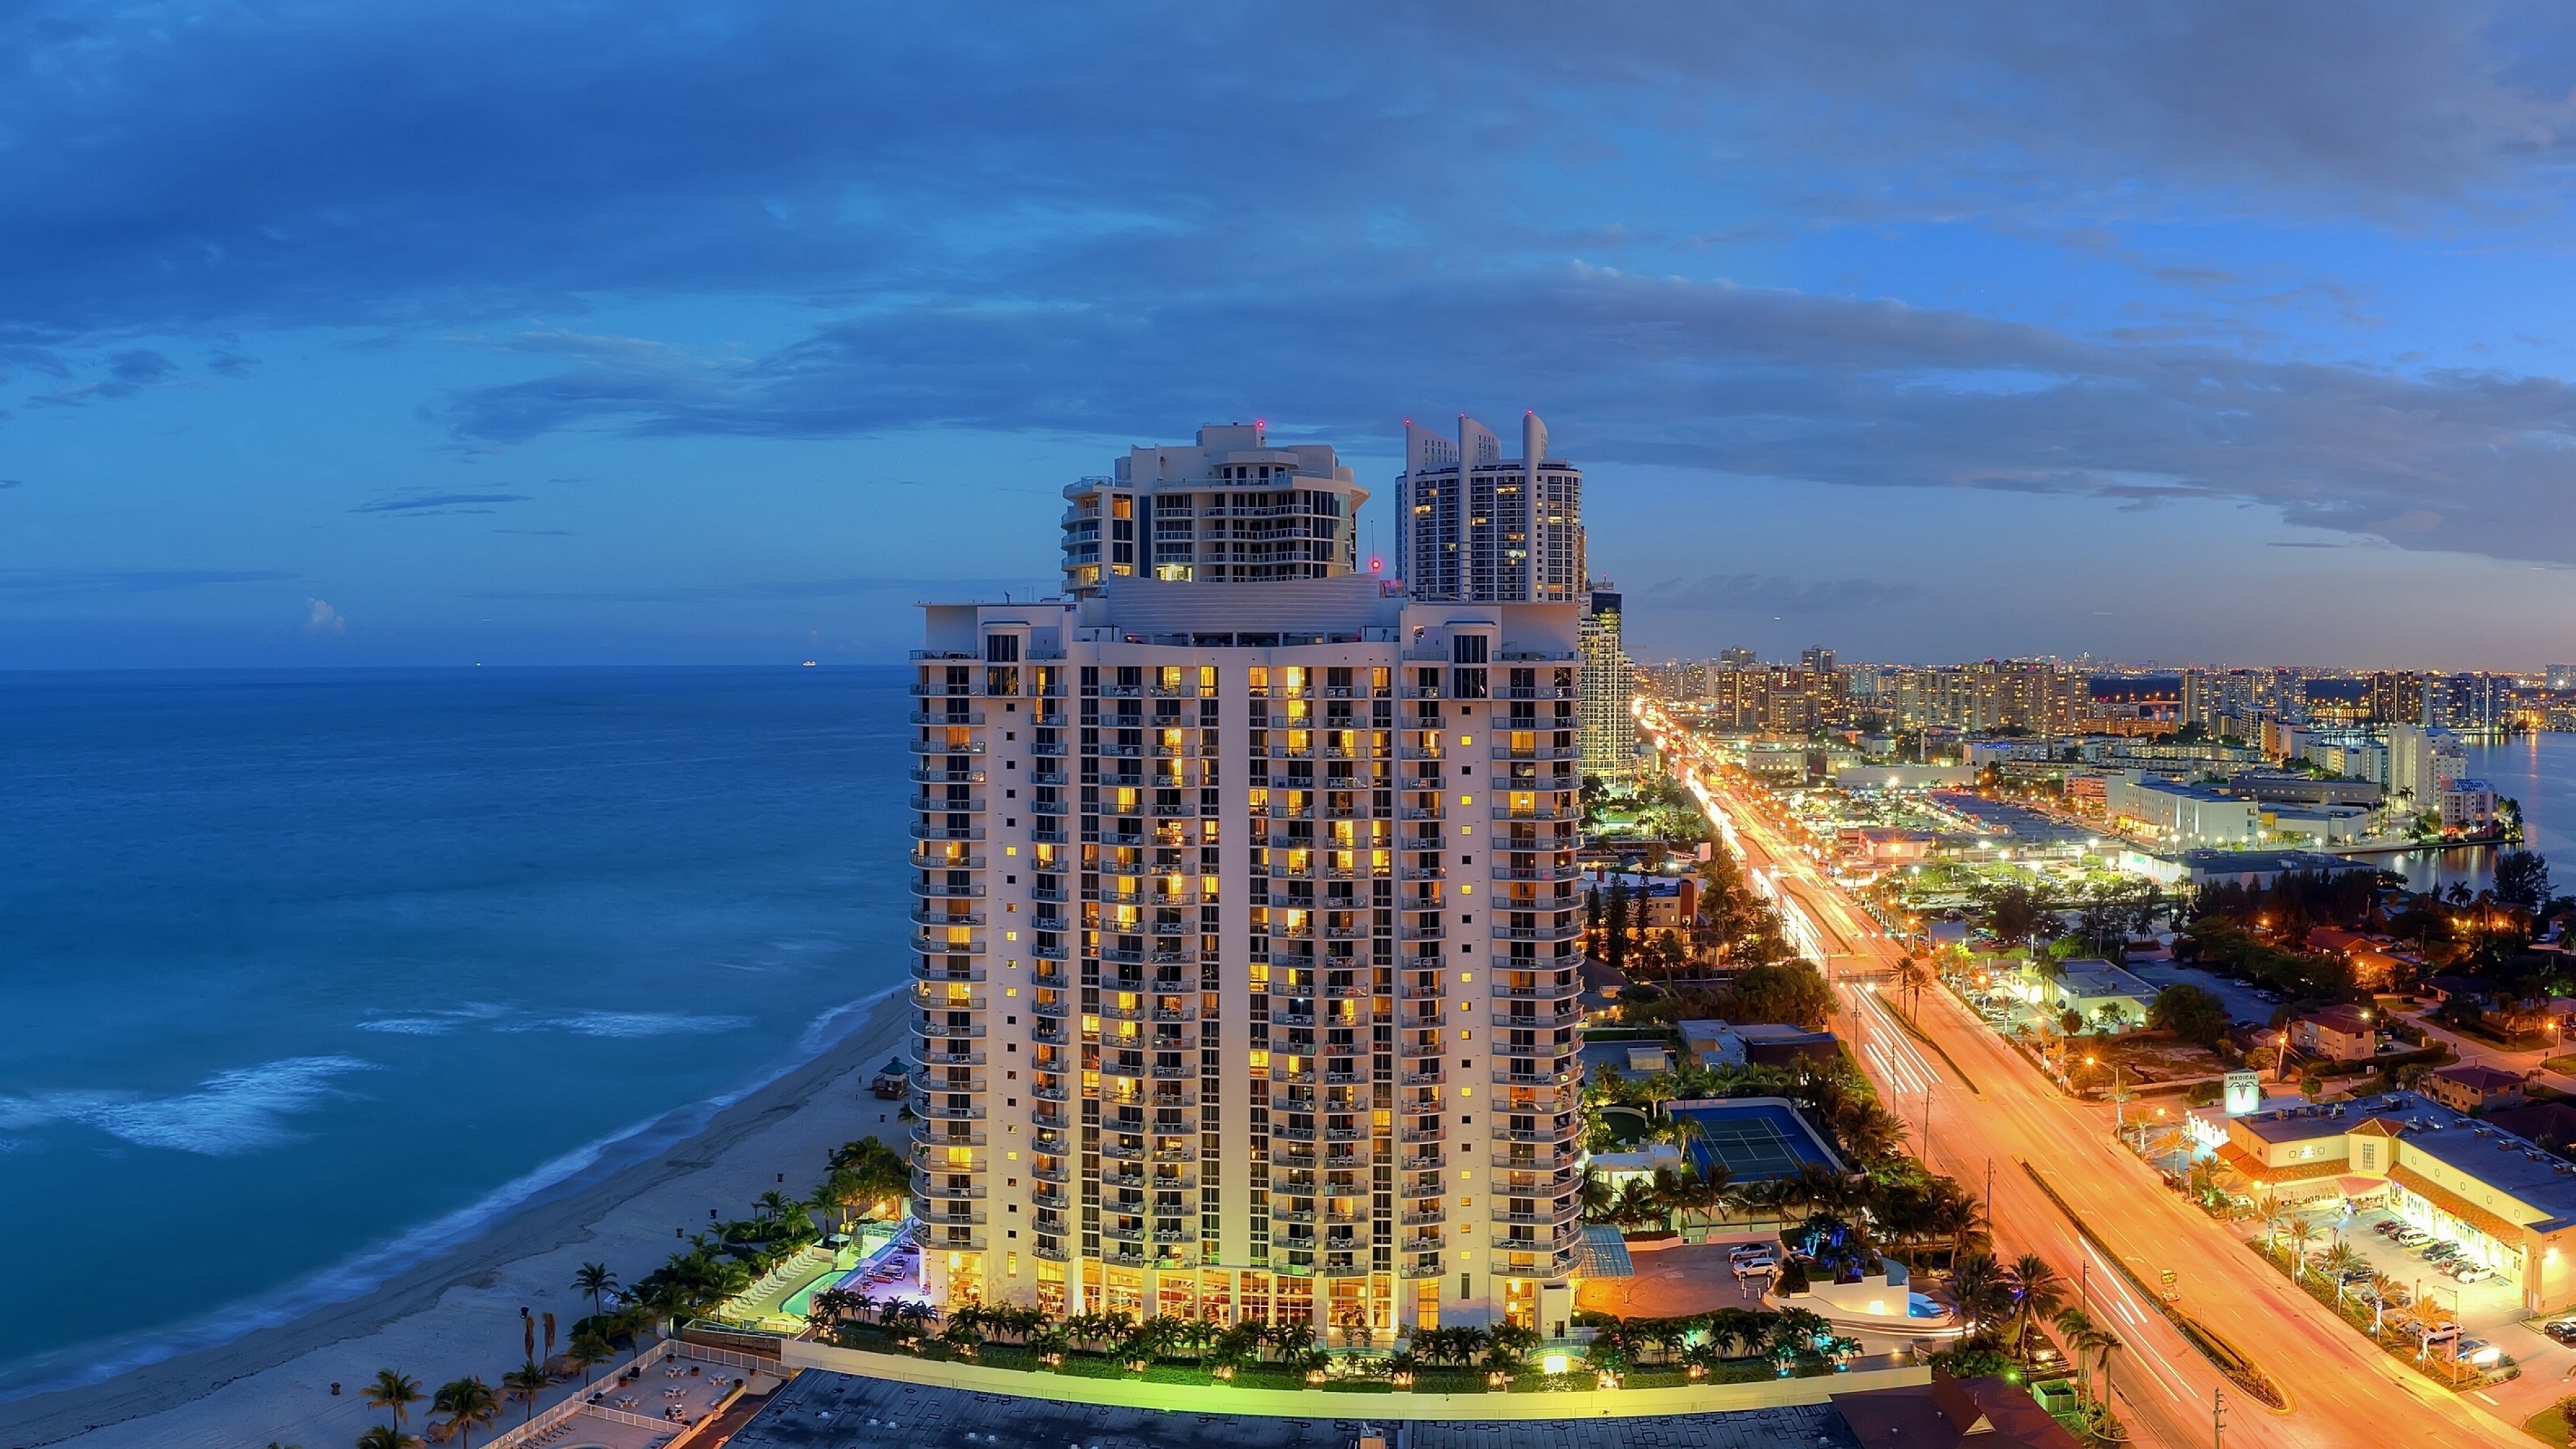 Miami travels, HD wallpapers, Urban landscapes, Vibrant colors, 3840x2160 4K Desktop